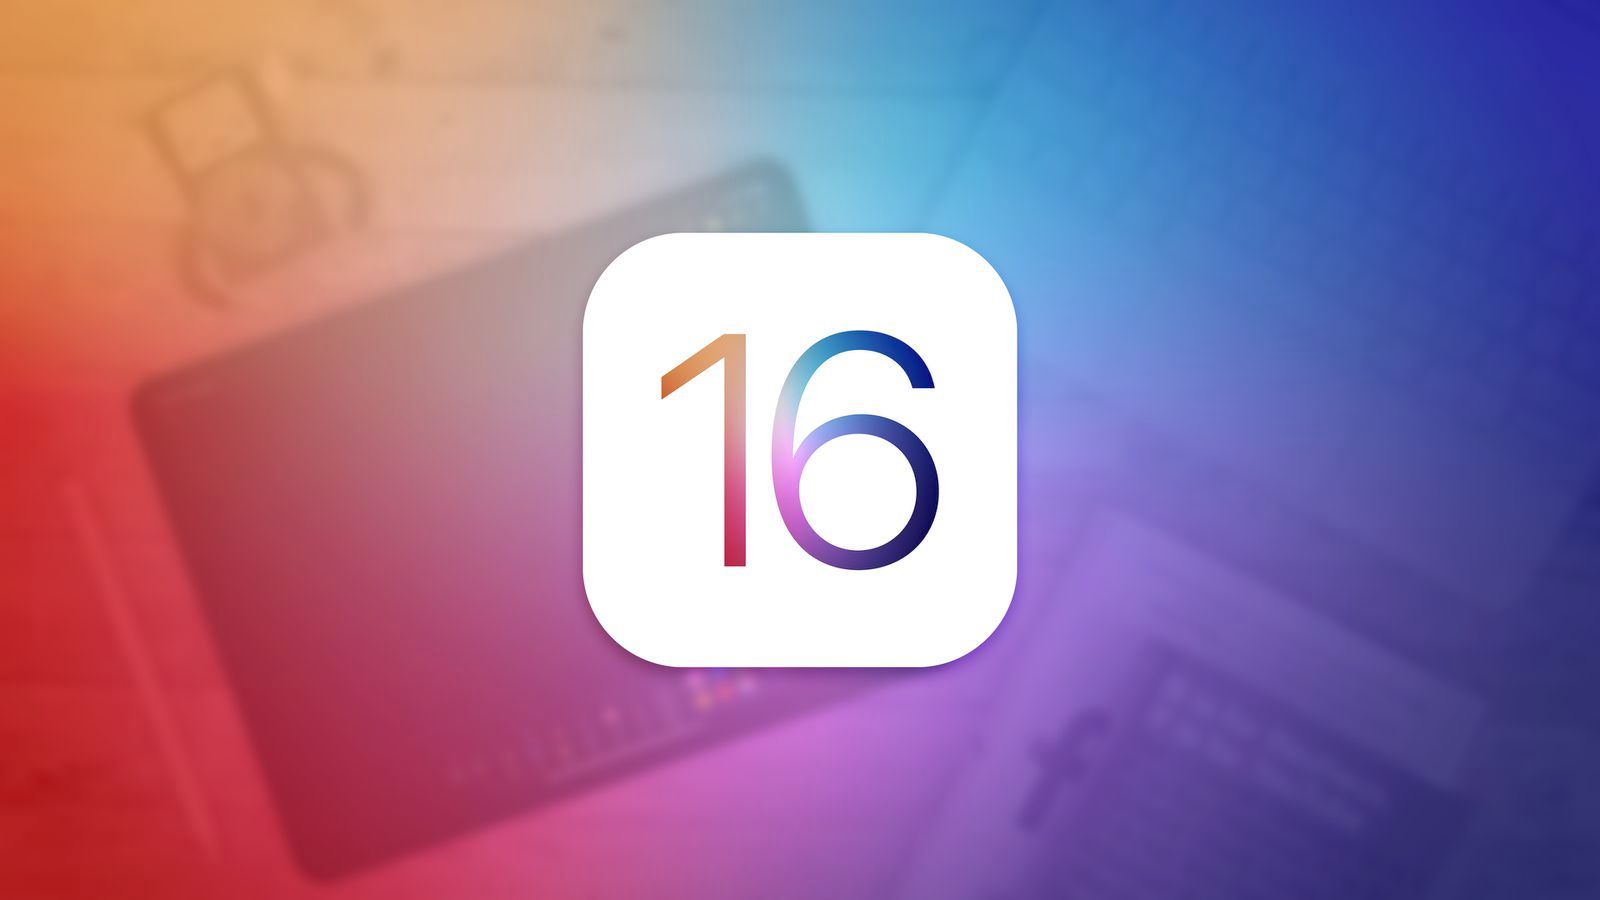 Гурман: В iOS 16 не стоит ждать существенного изменения в дизайне